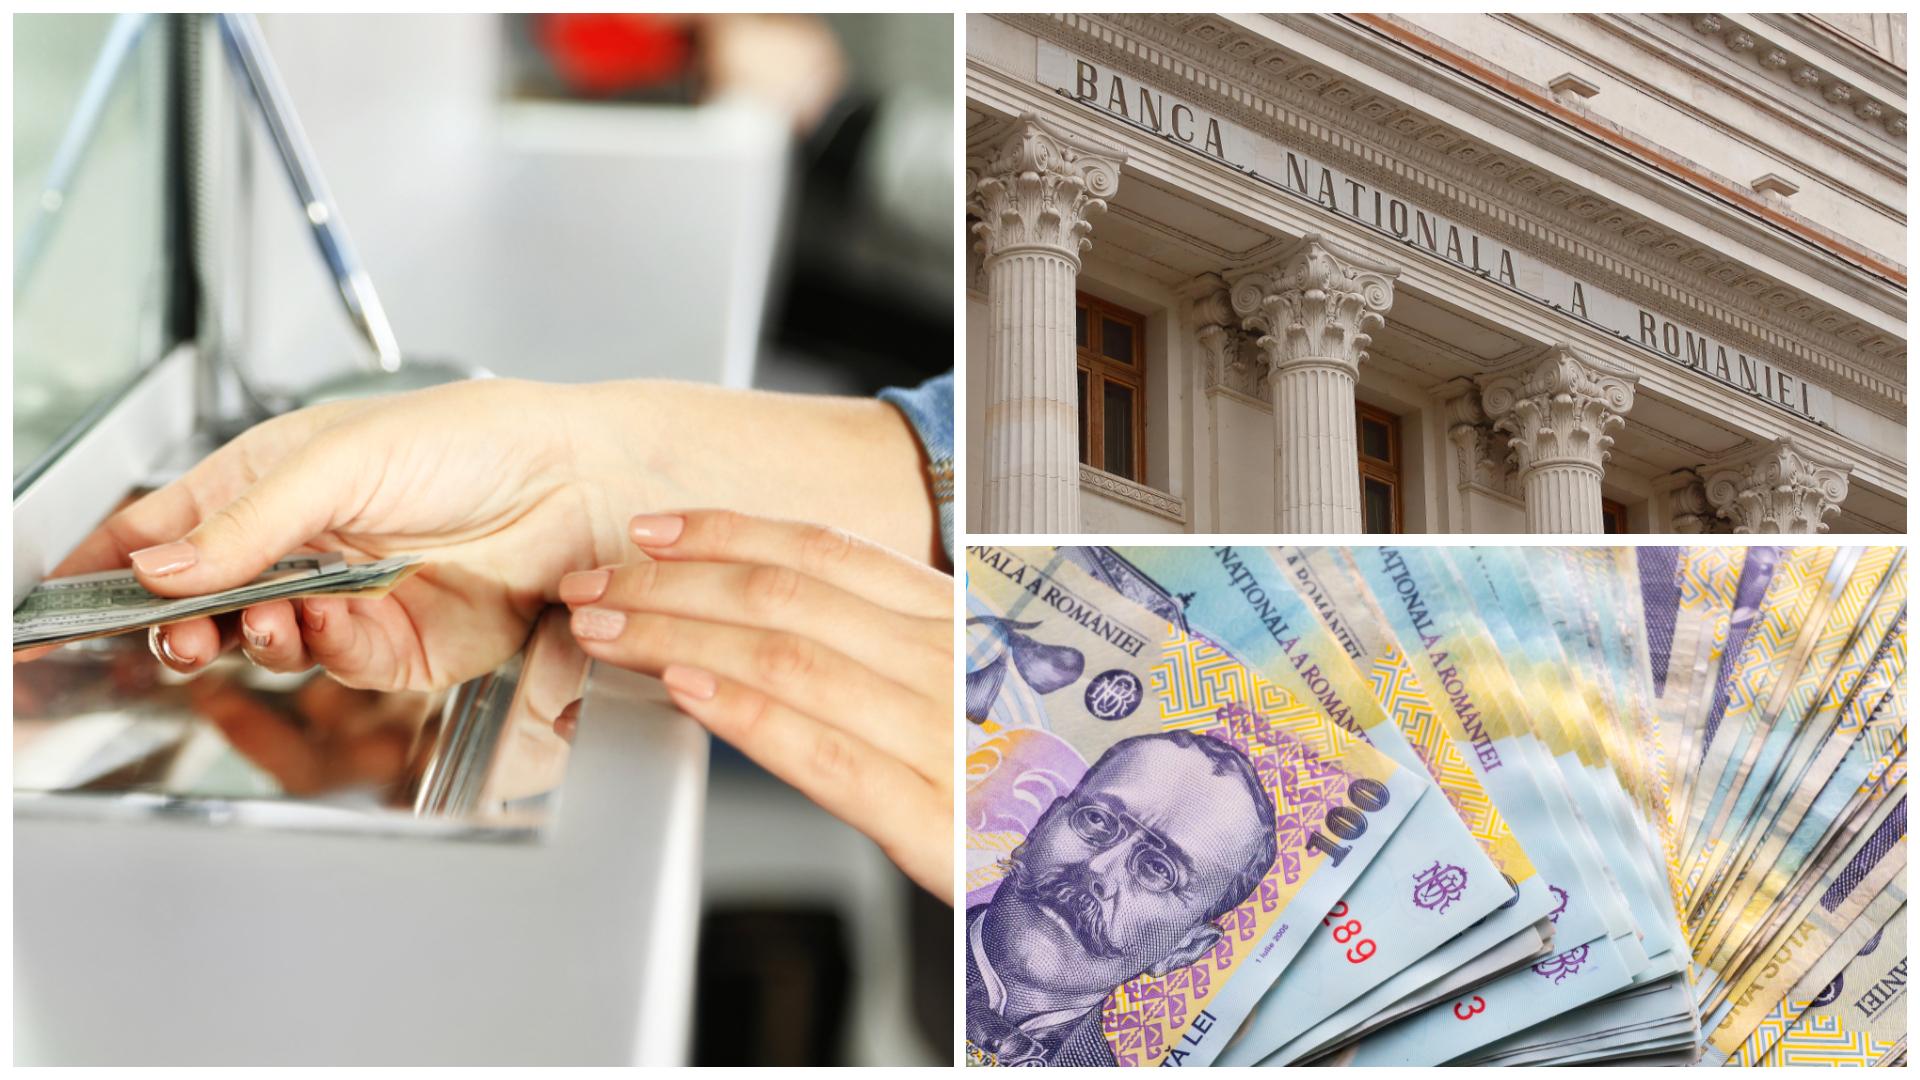 Anunț de la bănci pentru toți românii! Ce se întâmplă cu creșterea comisioanelor după discuția cu Marcel Ciolacu